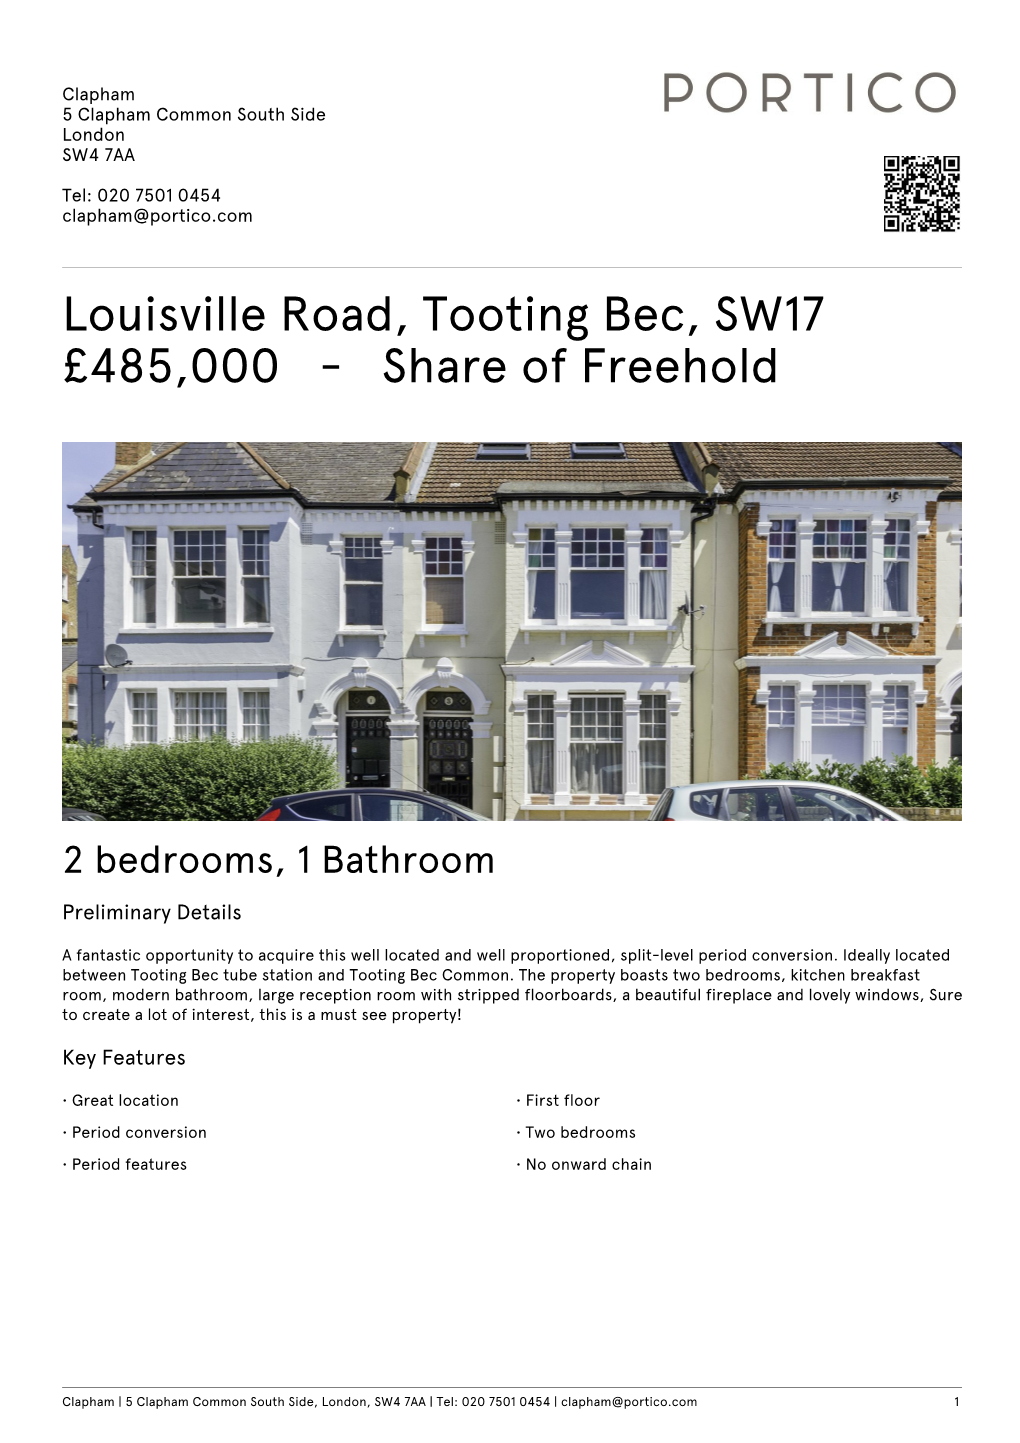 Louisville Road, Tooting Bec, SW17 £485000